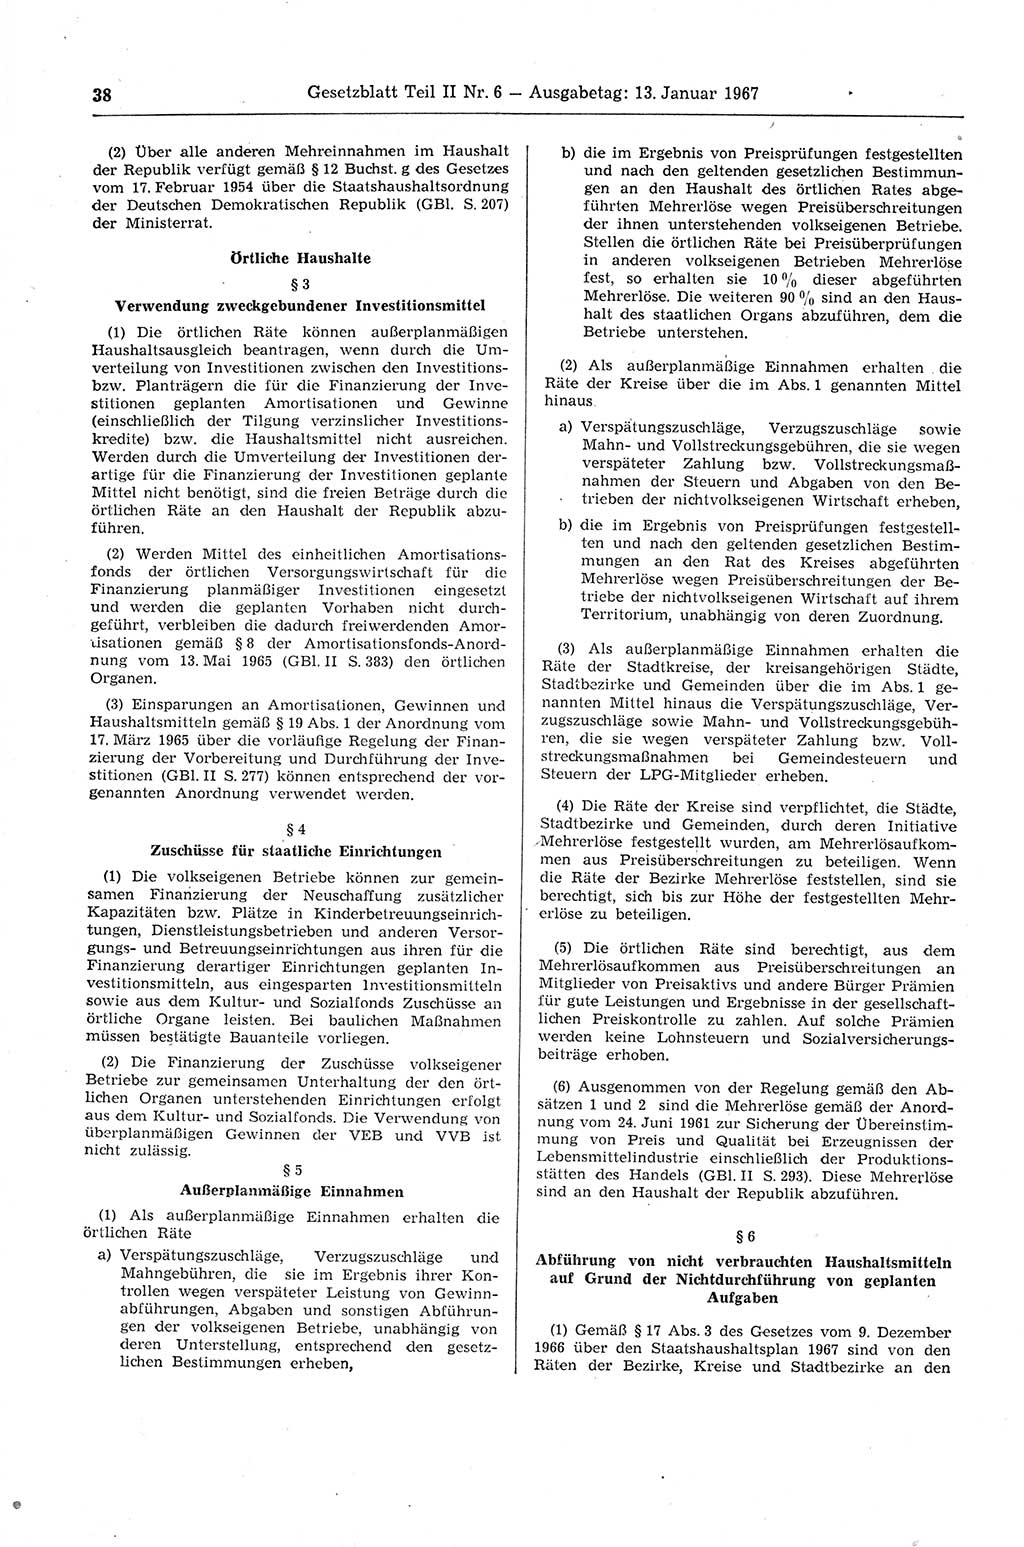 Gesetzblatt (GBl.) der Deutschen Demokratischen Republik (DDR) Teil ⅠⅠ 1967, Seite 38 (GBl. DDR ⅠⅠ 1967, S. 38)